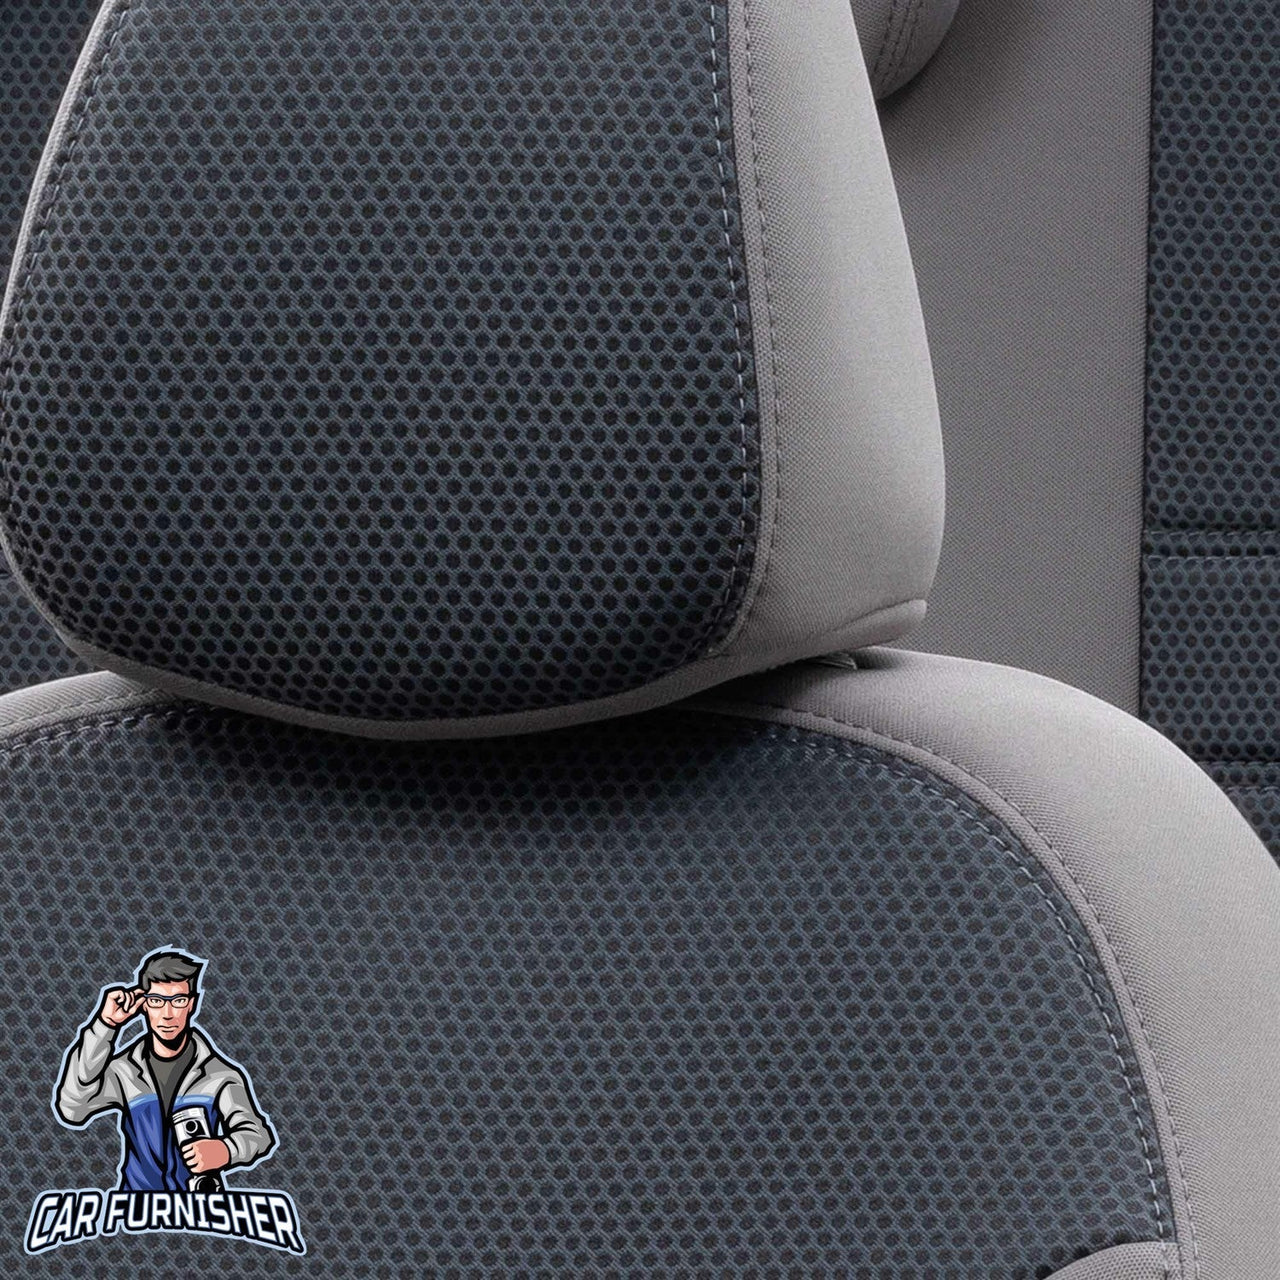 Skoda Citigo Seat Covers Original Jacquard Design Smoked Jacquard Fabric